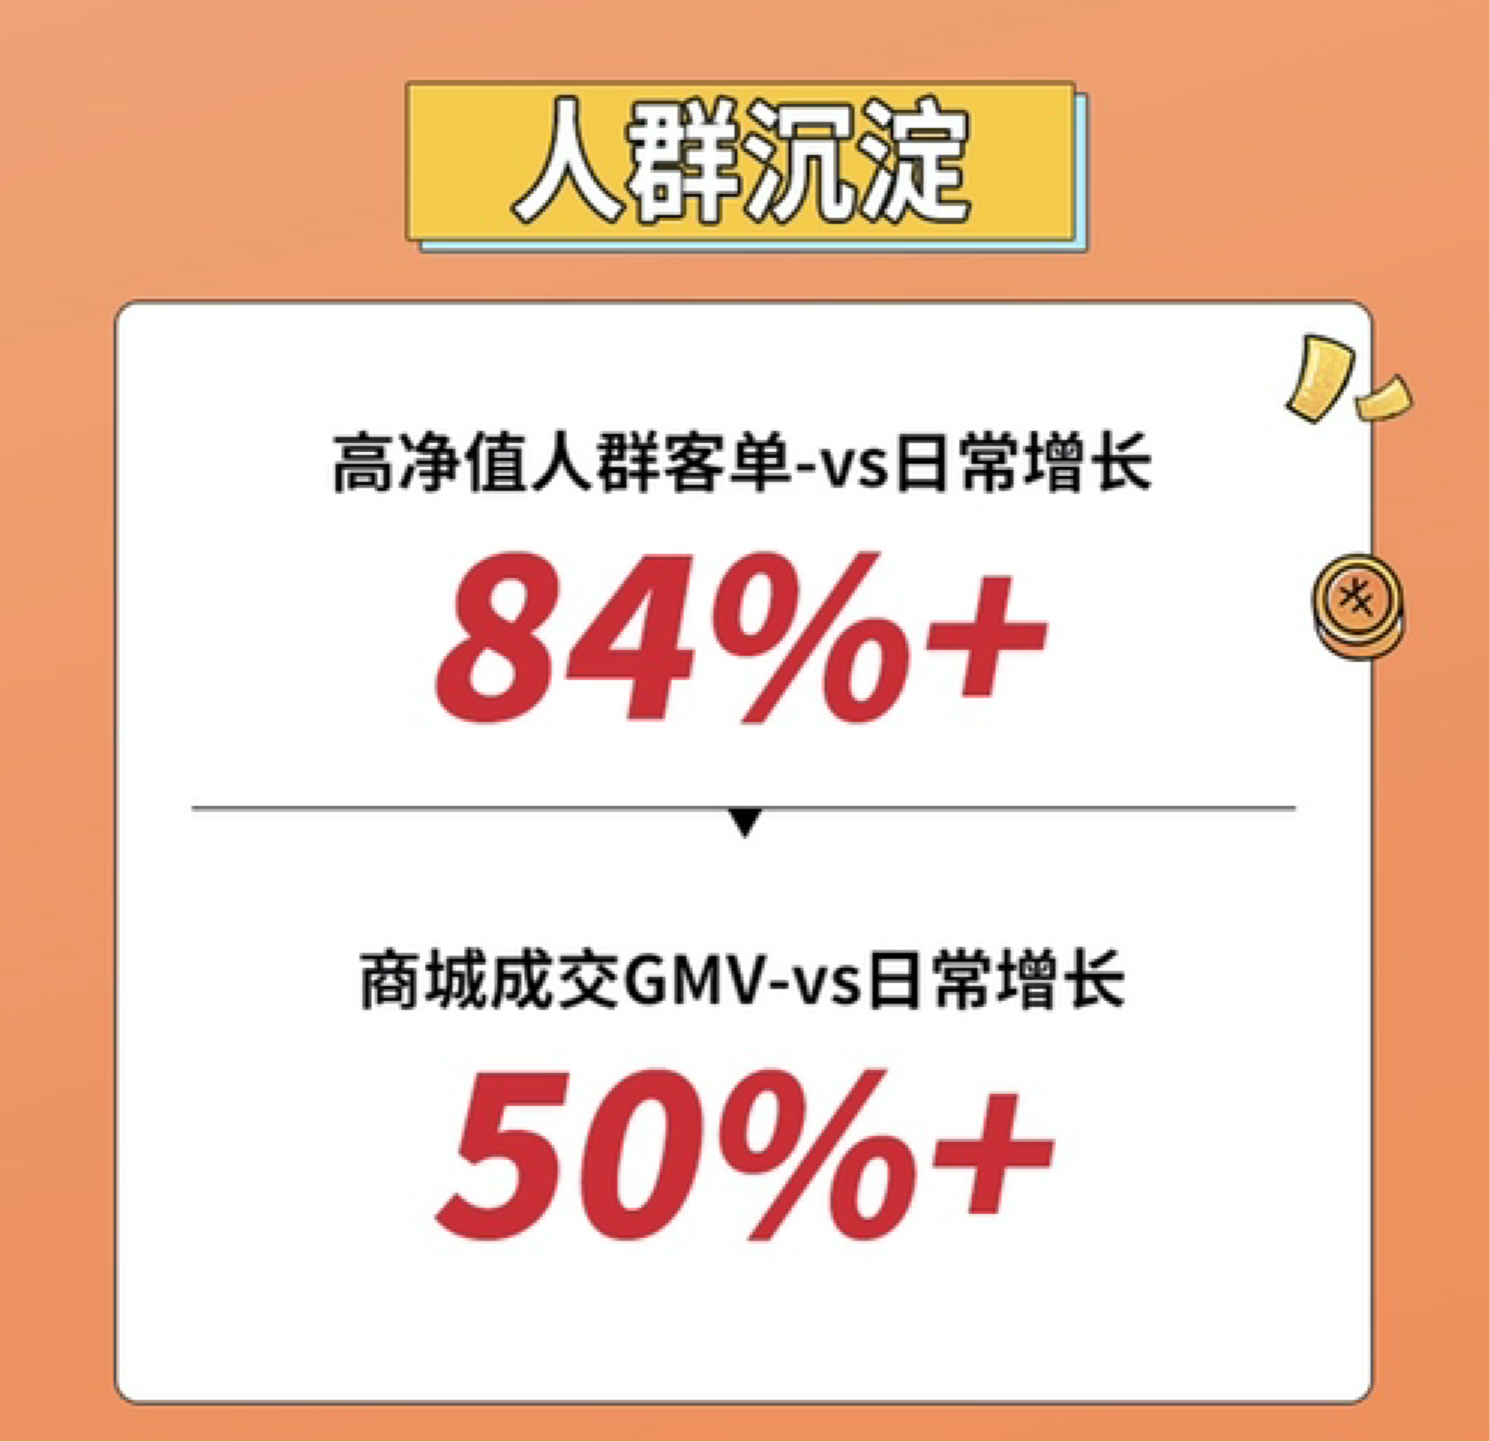 GMV提升超500%，江中x抖in生活范儿 如何打响健康营销冲锋号？